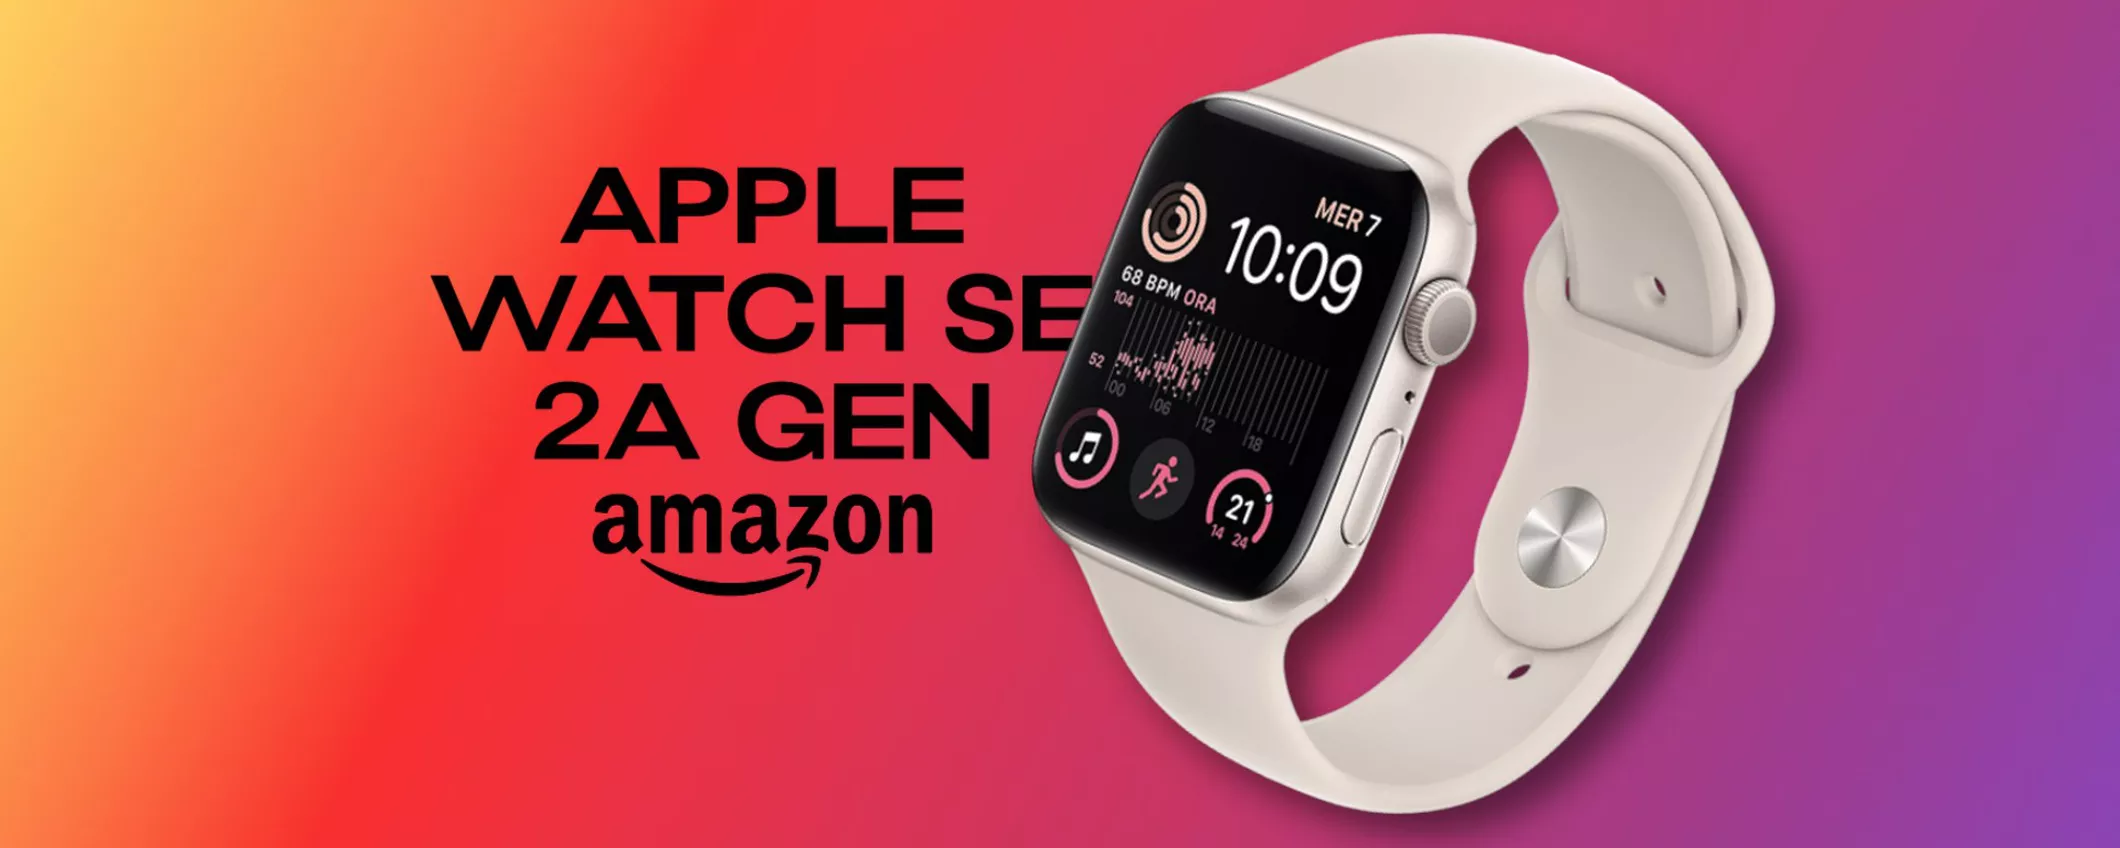 Apple Watch SE 2ª gen. GPS: PROMO Amazon a 63€/mese